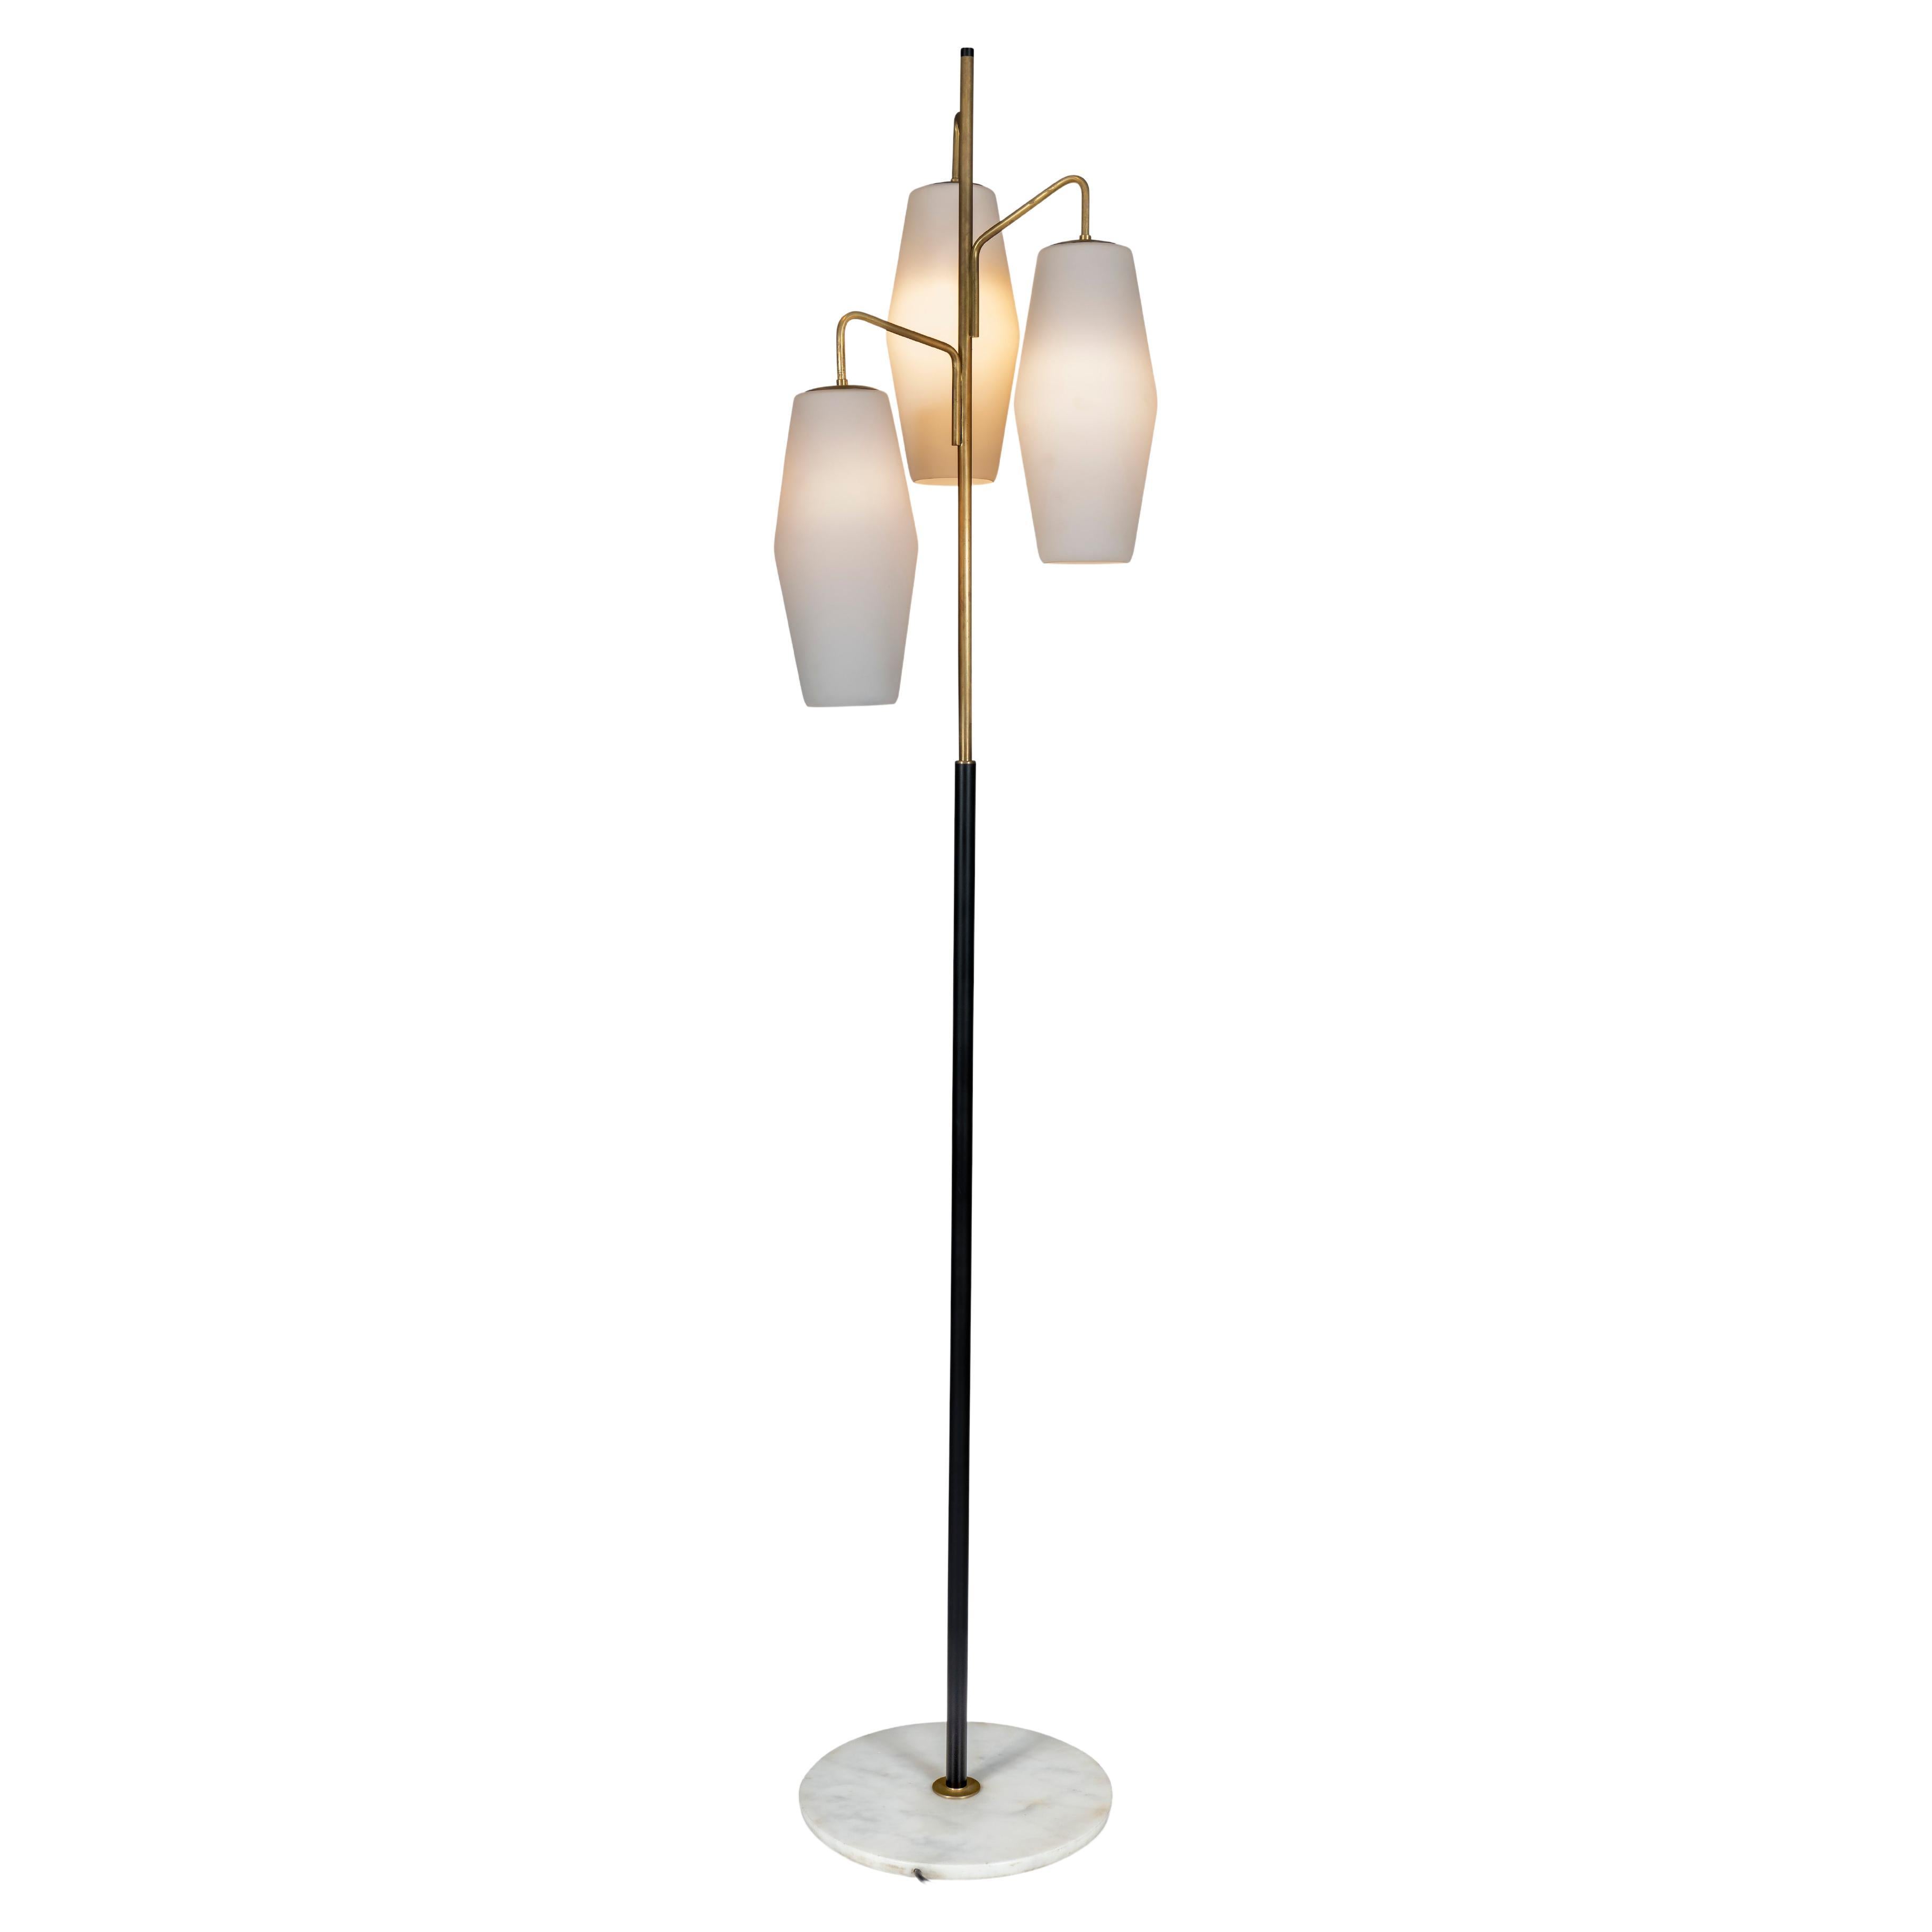 Model 4052 Floor Lamp by Stilnovo